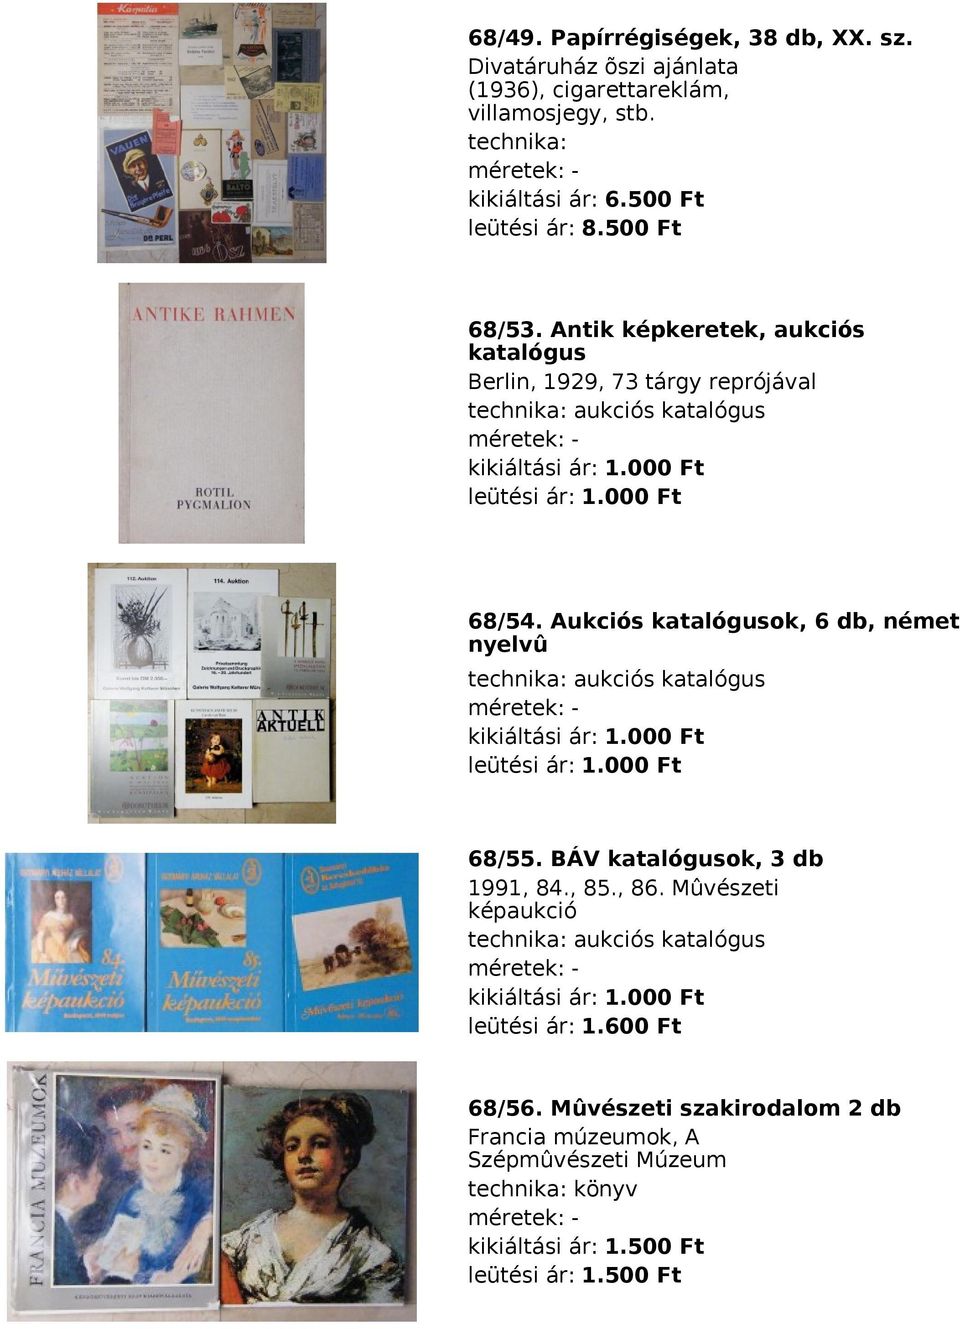 Aukciós katalógusok, 6 db, német nyelvû aukciós katalógus 68/55. BÁV katalógusok, 3 db 1991, 84., 85., 86.